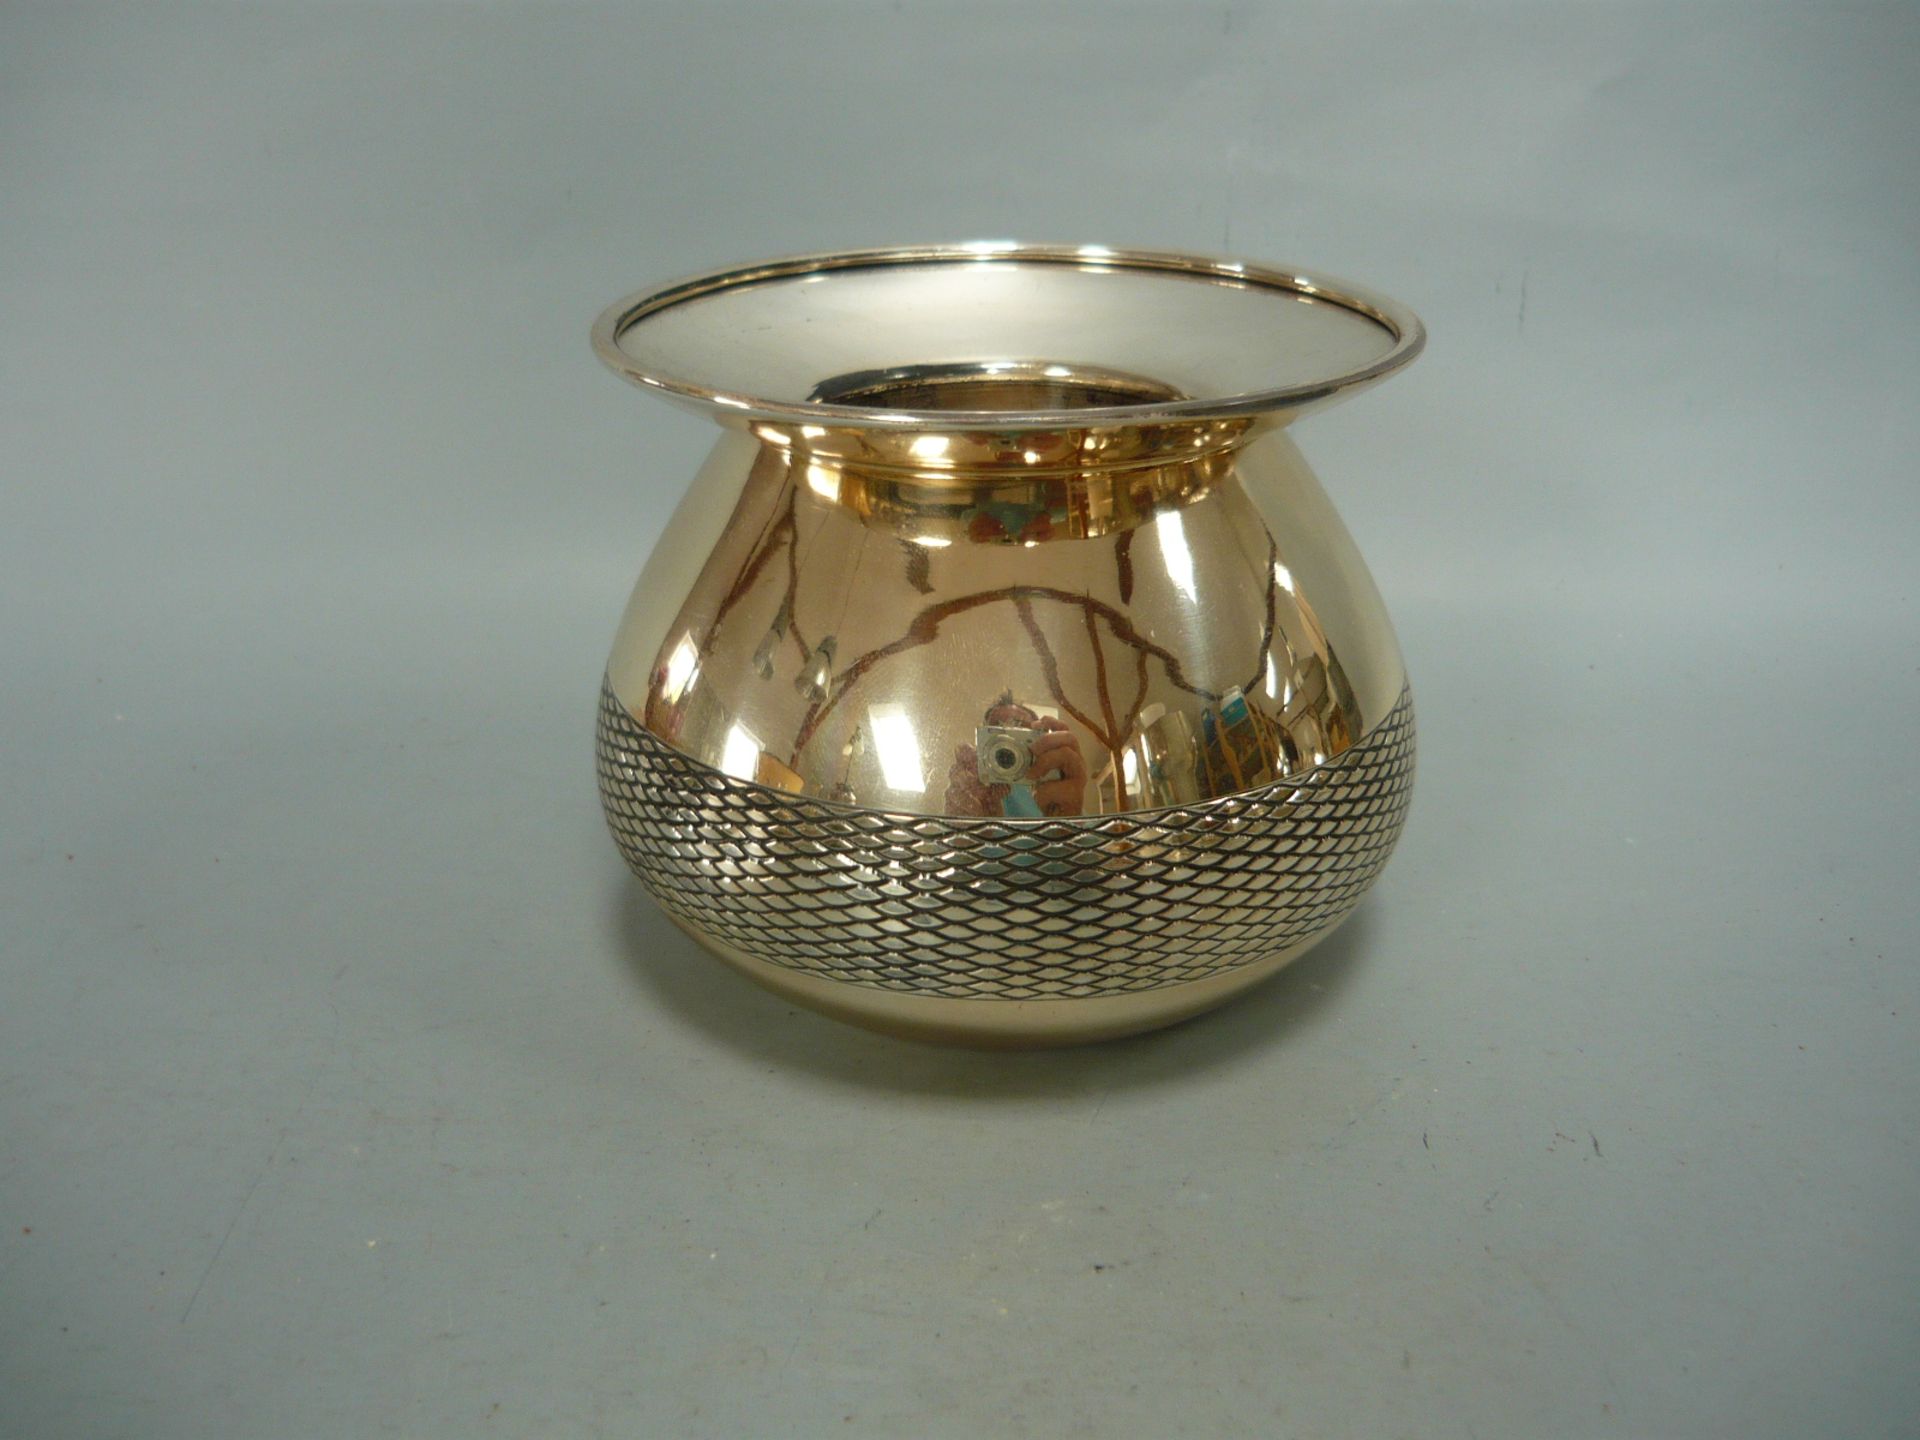 Designer Vase in 925er Sterling Silber. Umlaufendes Rautenband. Ø 12cm, H. 10cm. Gewicht ca. 231gr.